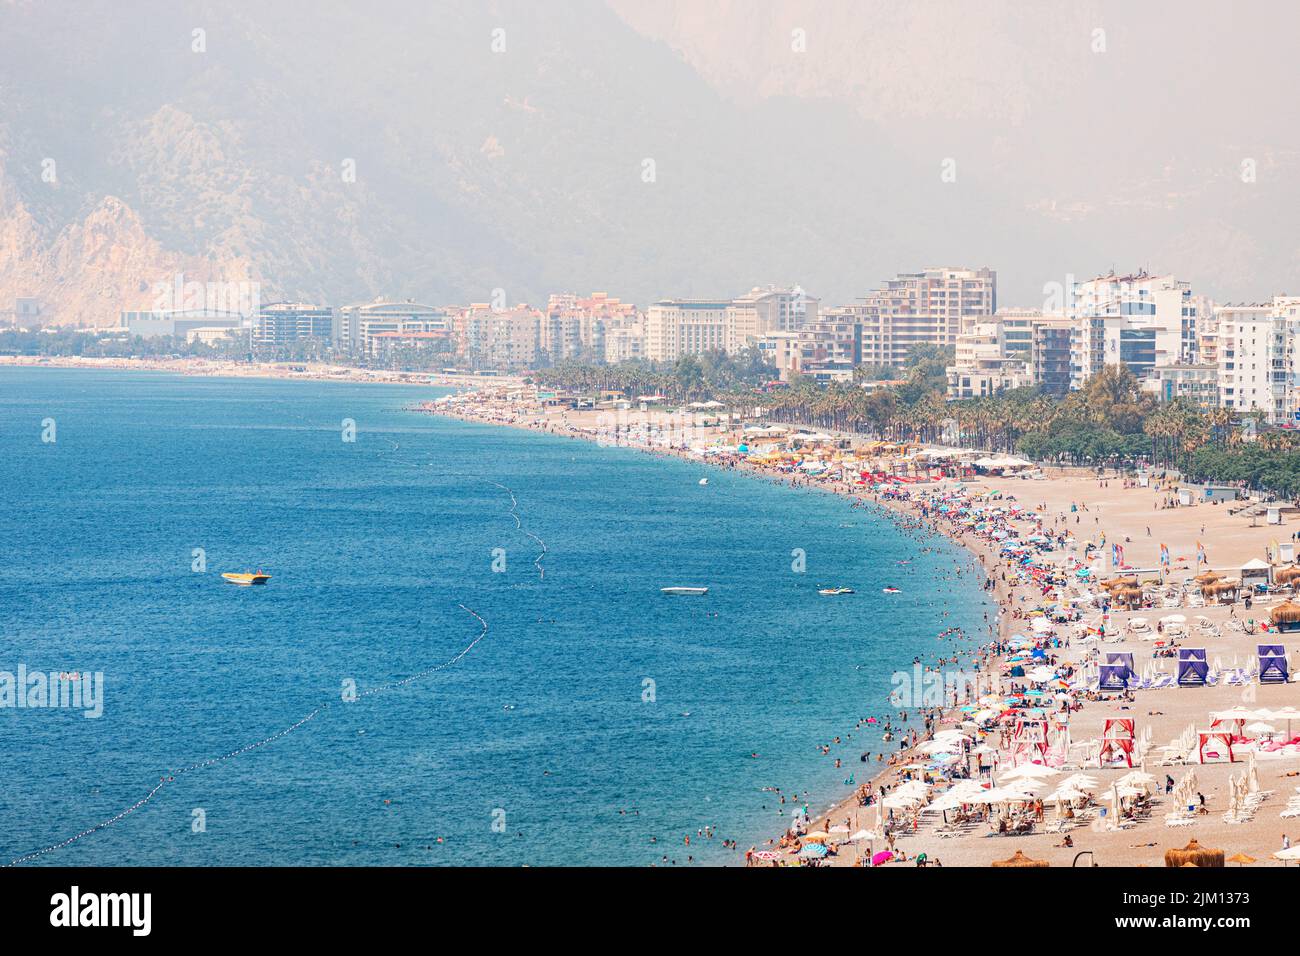 04 de junio de 2022, Antalya, Turquía: Playa de ciudad llena de gente con cientos de turistas y turistas descansando, tomando el sol y nadando en el verano extremadamente caliente d Foto de stock